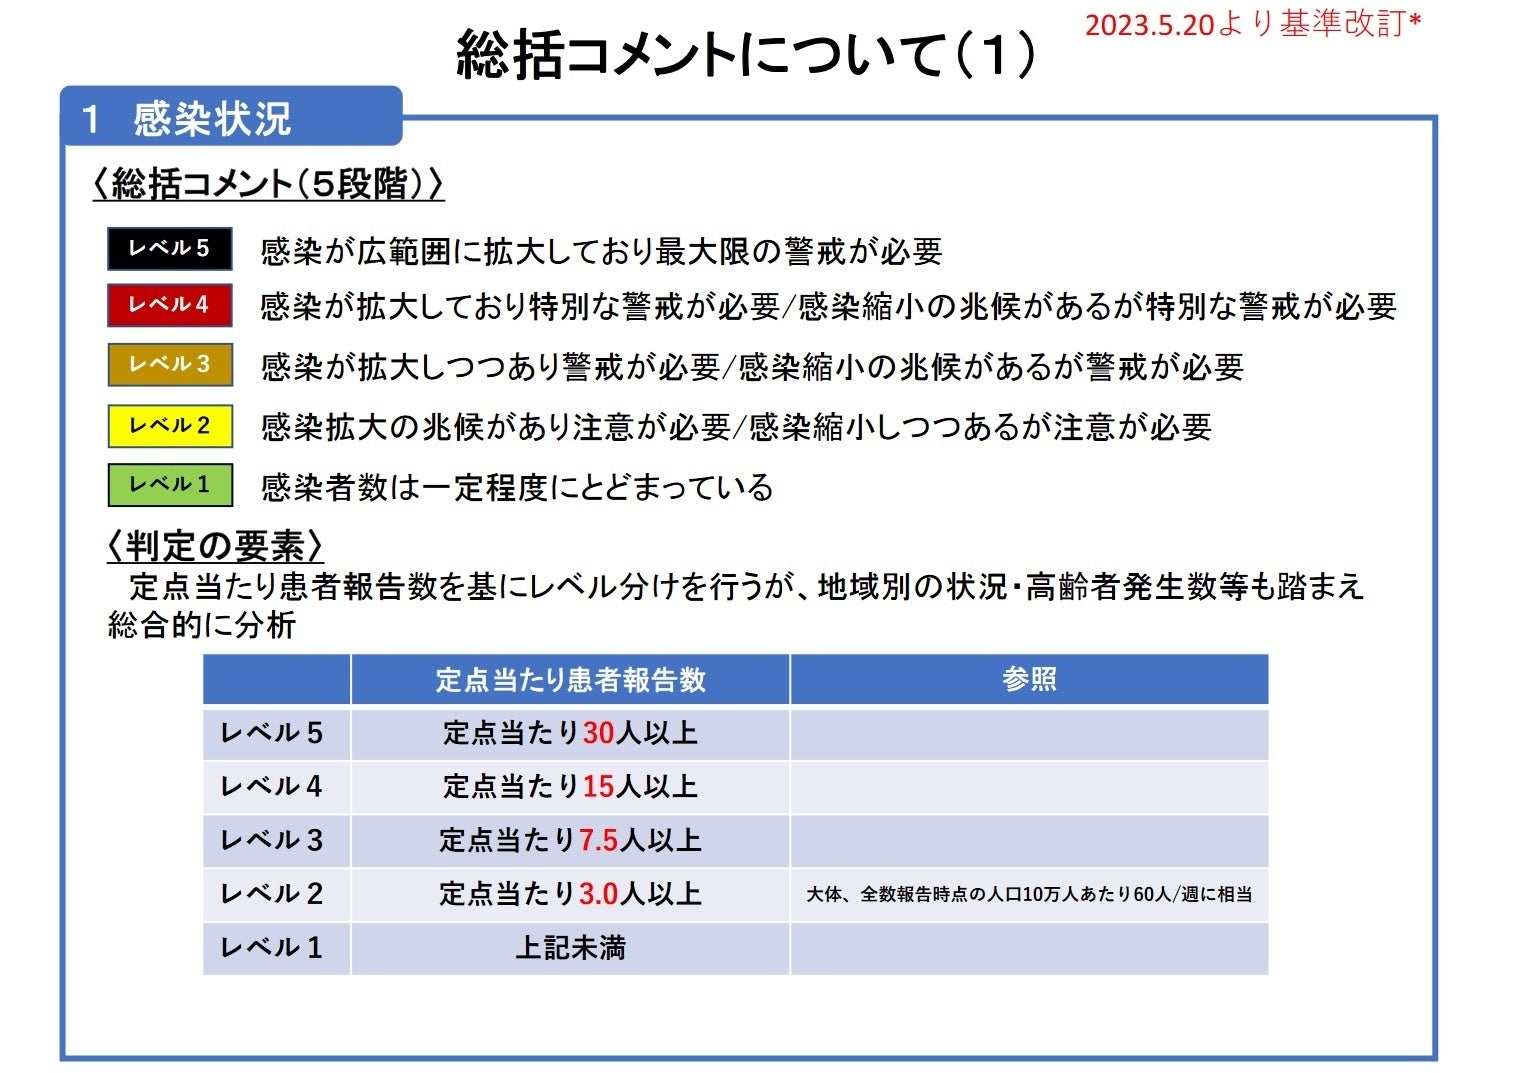 【岡山大学】岡山県内の感染状況・医療提供体制の分析について（2024年3月22日現在）